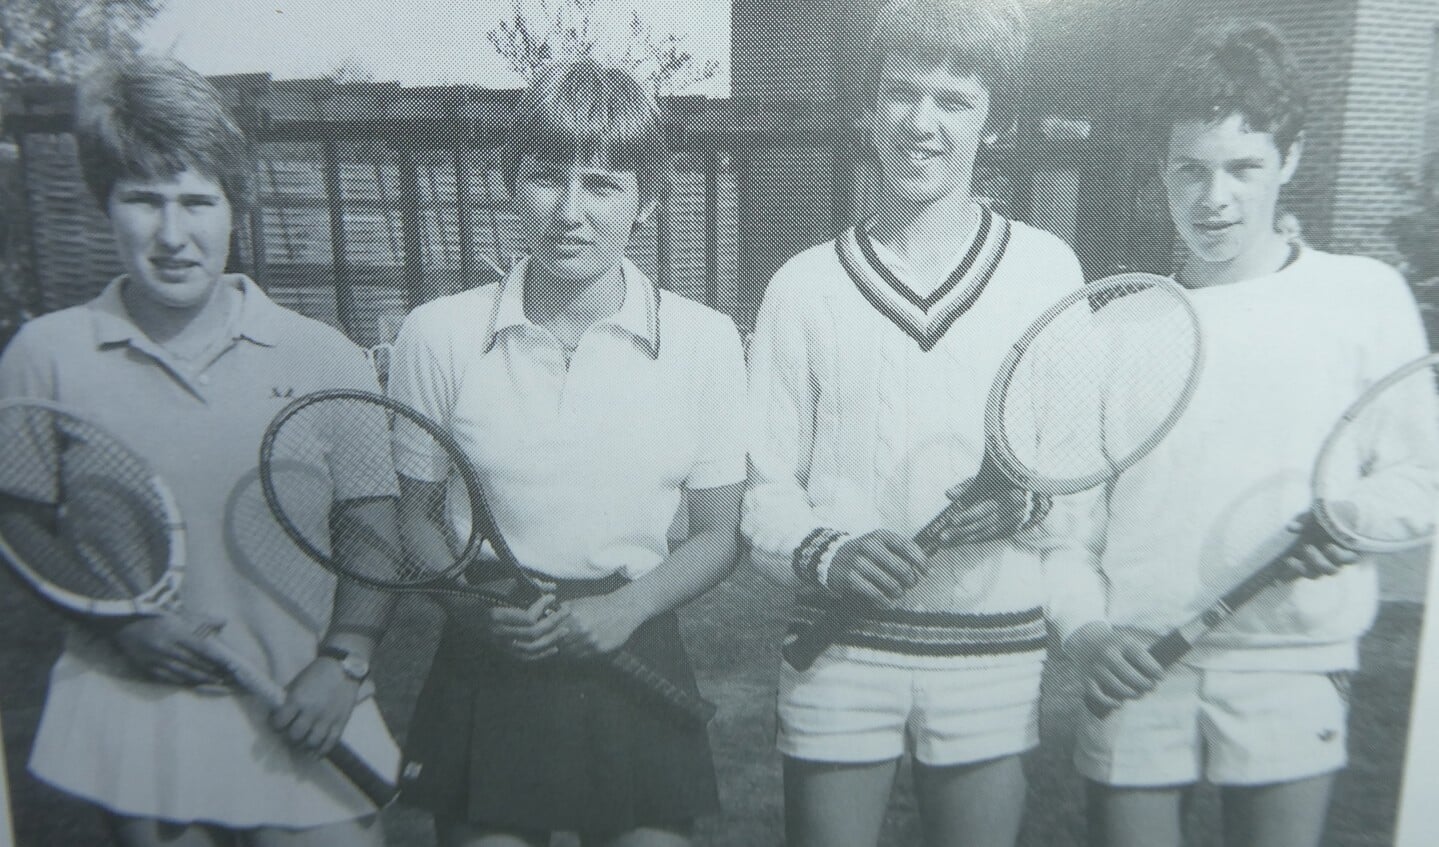 Het absolute sportieve hoogtepunt van Tennisvereniging Ruurlo gaat terug naar 1981 toen het gemengde Juniorenteam destijds bestaande uit Petra en Carin Magis, Geert Brinkerink en Pieter Alberts Nederlands kampioen werd. Foto: TB Ruurlo